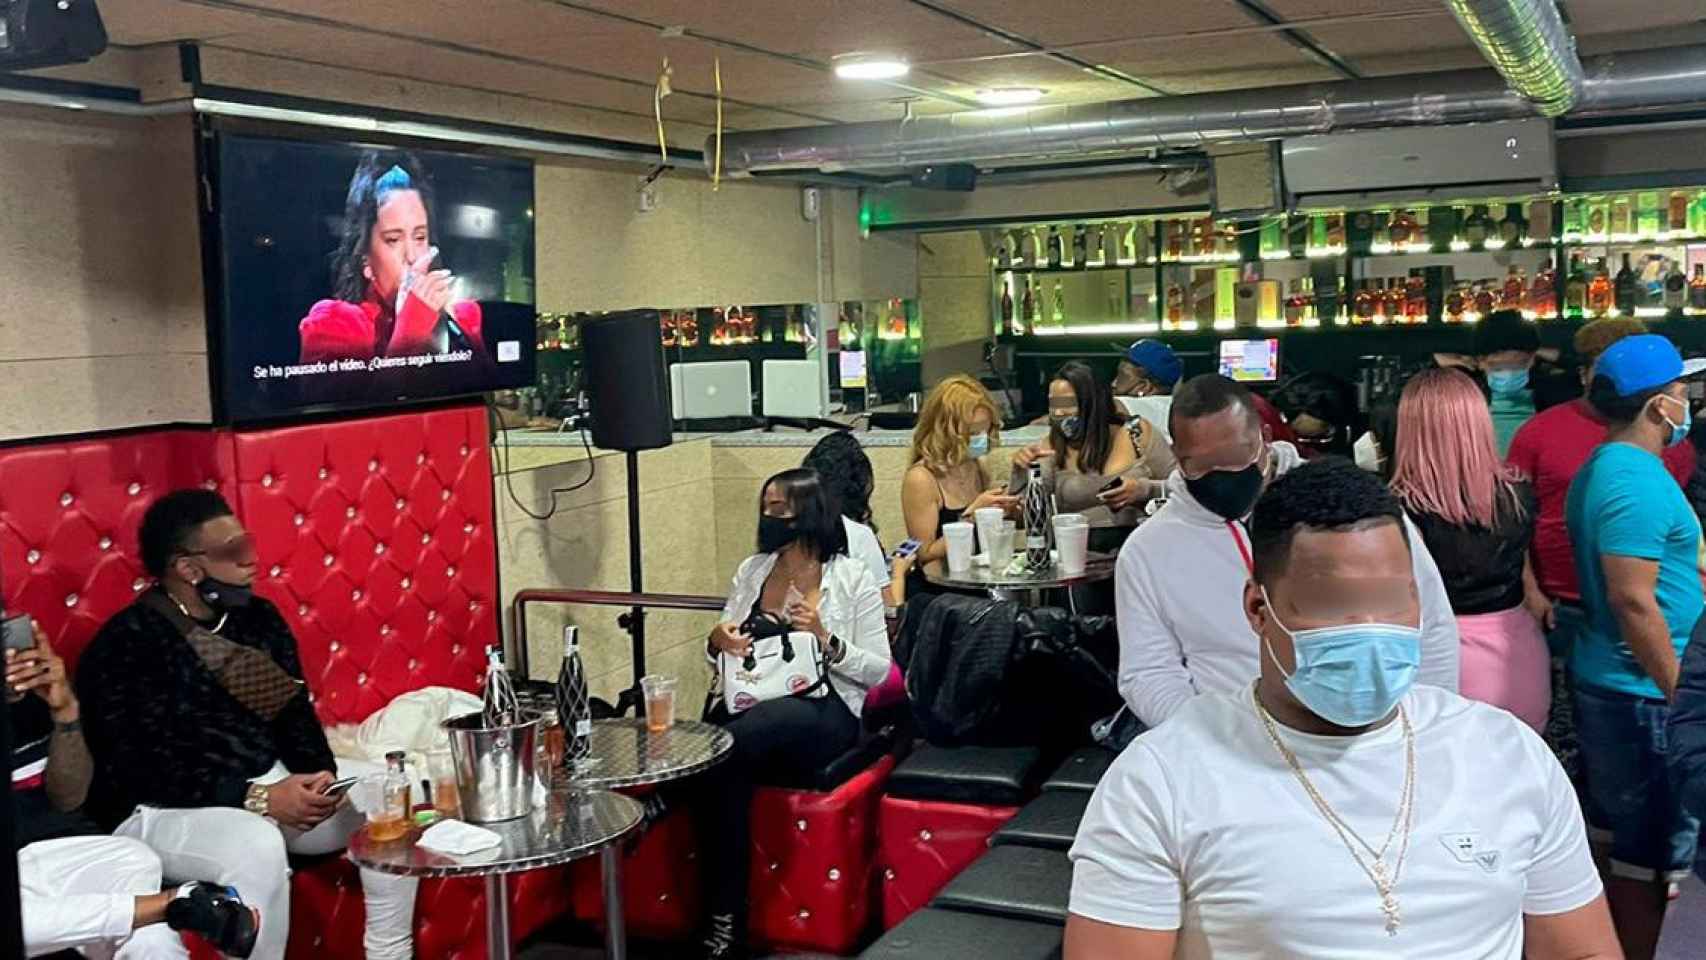 Asistentes a la fiesta ilegal en un bar de Badalona, a los que la Guardia Urbana ha denunciado / AJUNTAMENT DE BADALONA